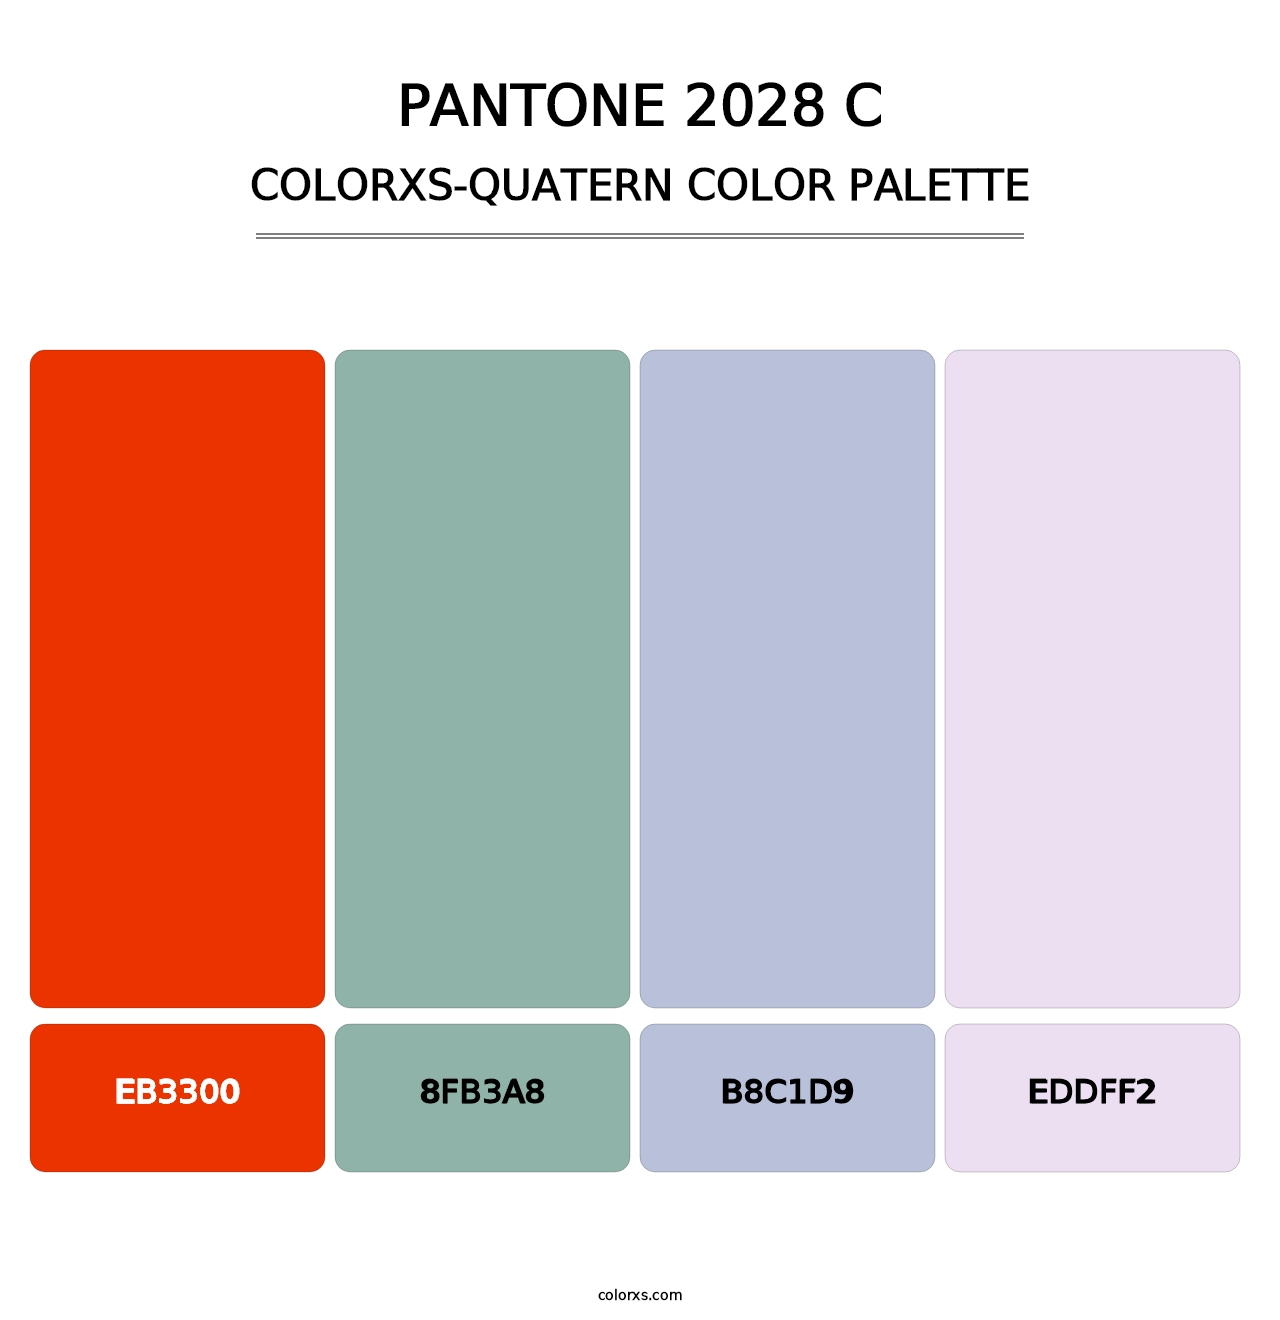 PANTONE 2028 C - Colorxs Quatern Palette